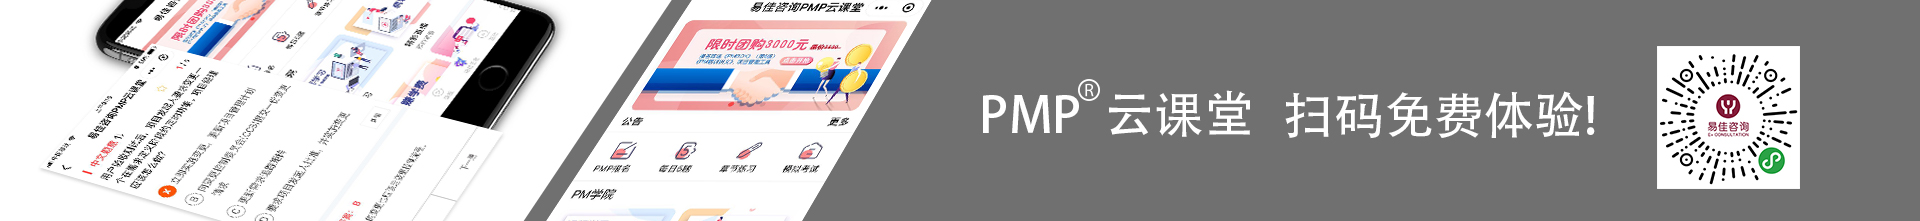 扫码登录易佳PMP微信小程序